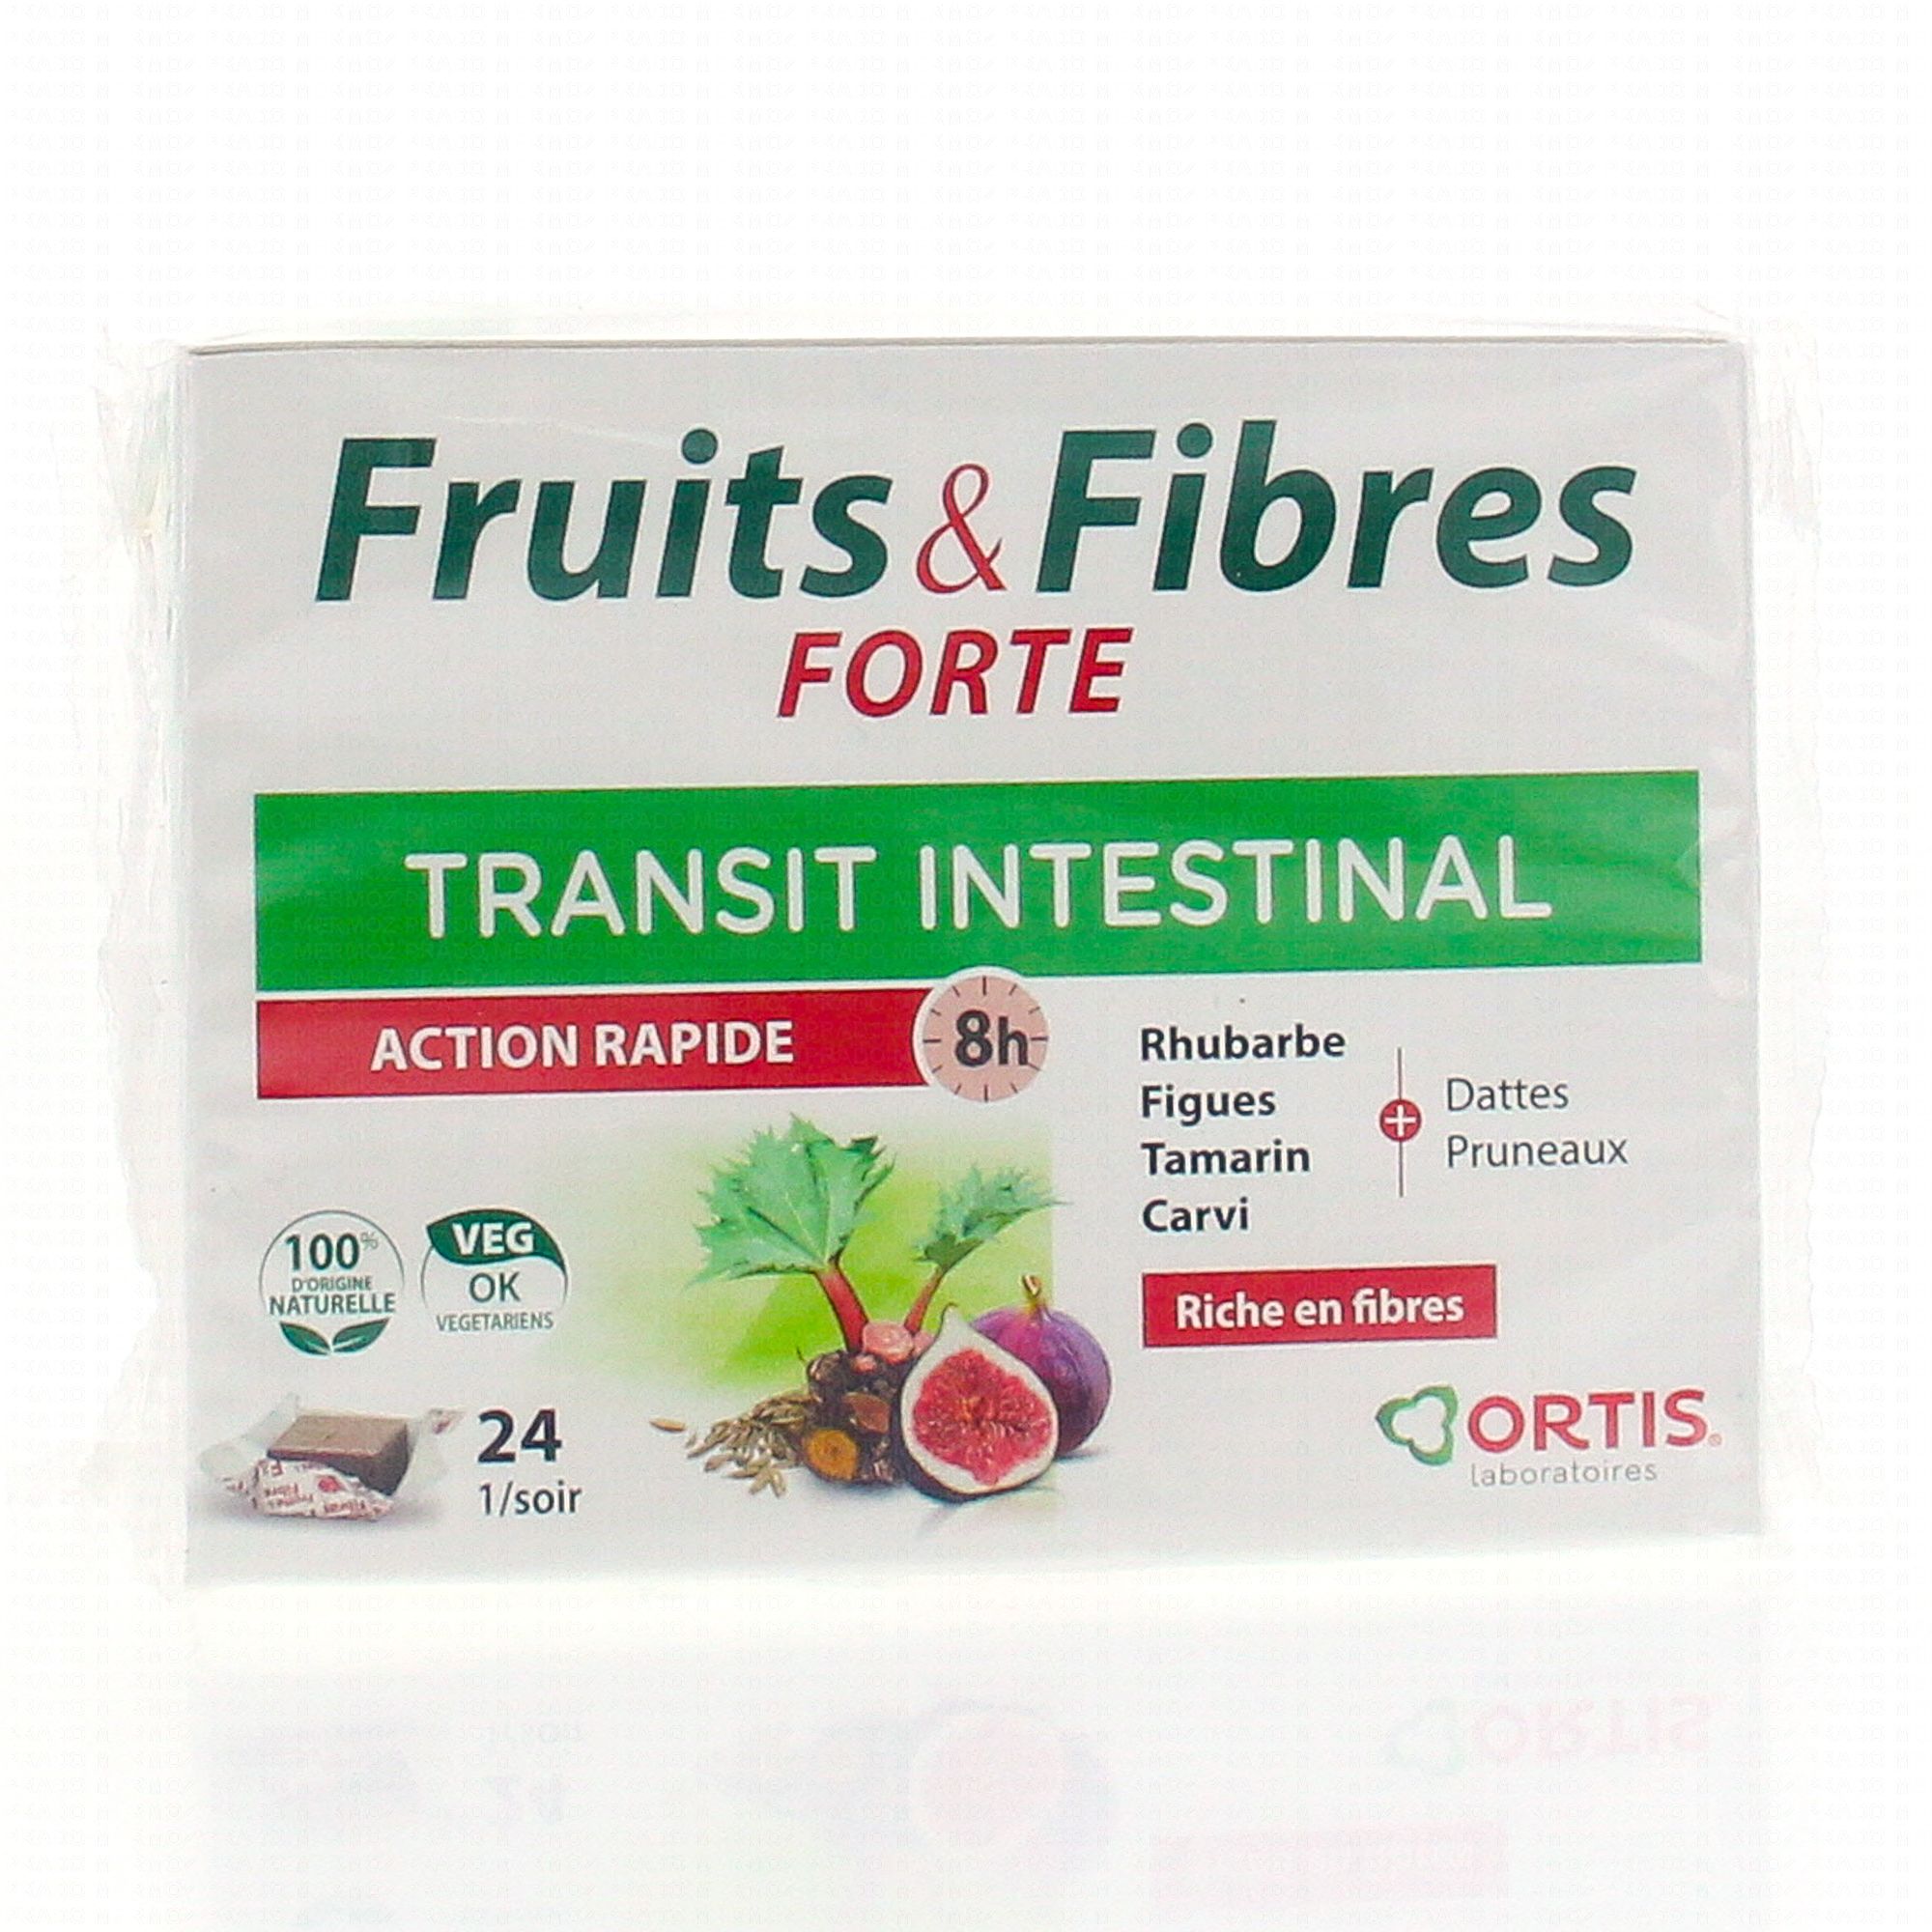 ORTIS Fruits & Fibres forte transit intestinal action rapide boîte de 24 cubes - Pharmacie en